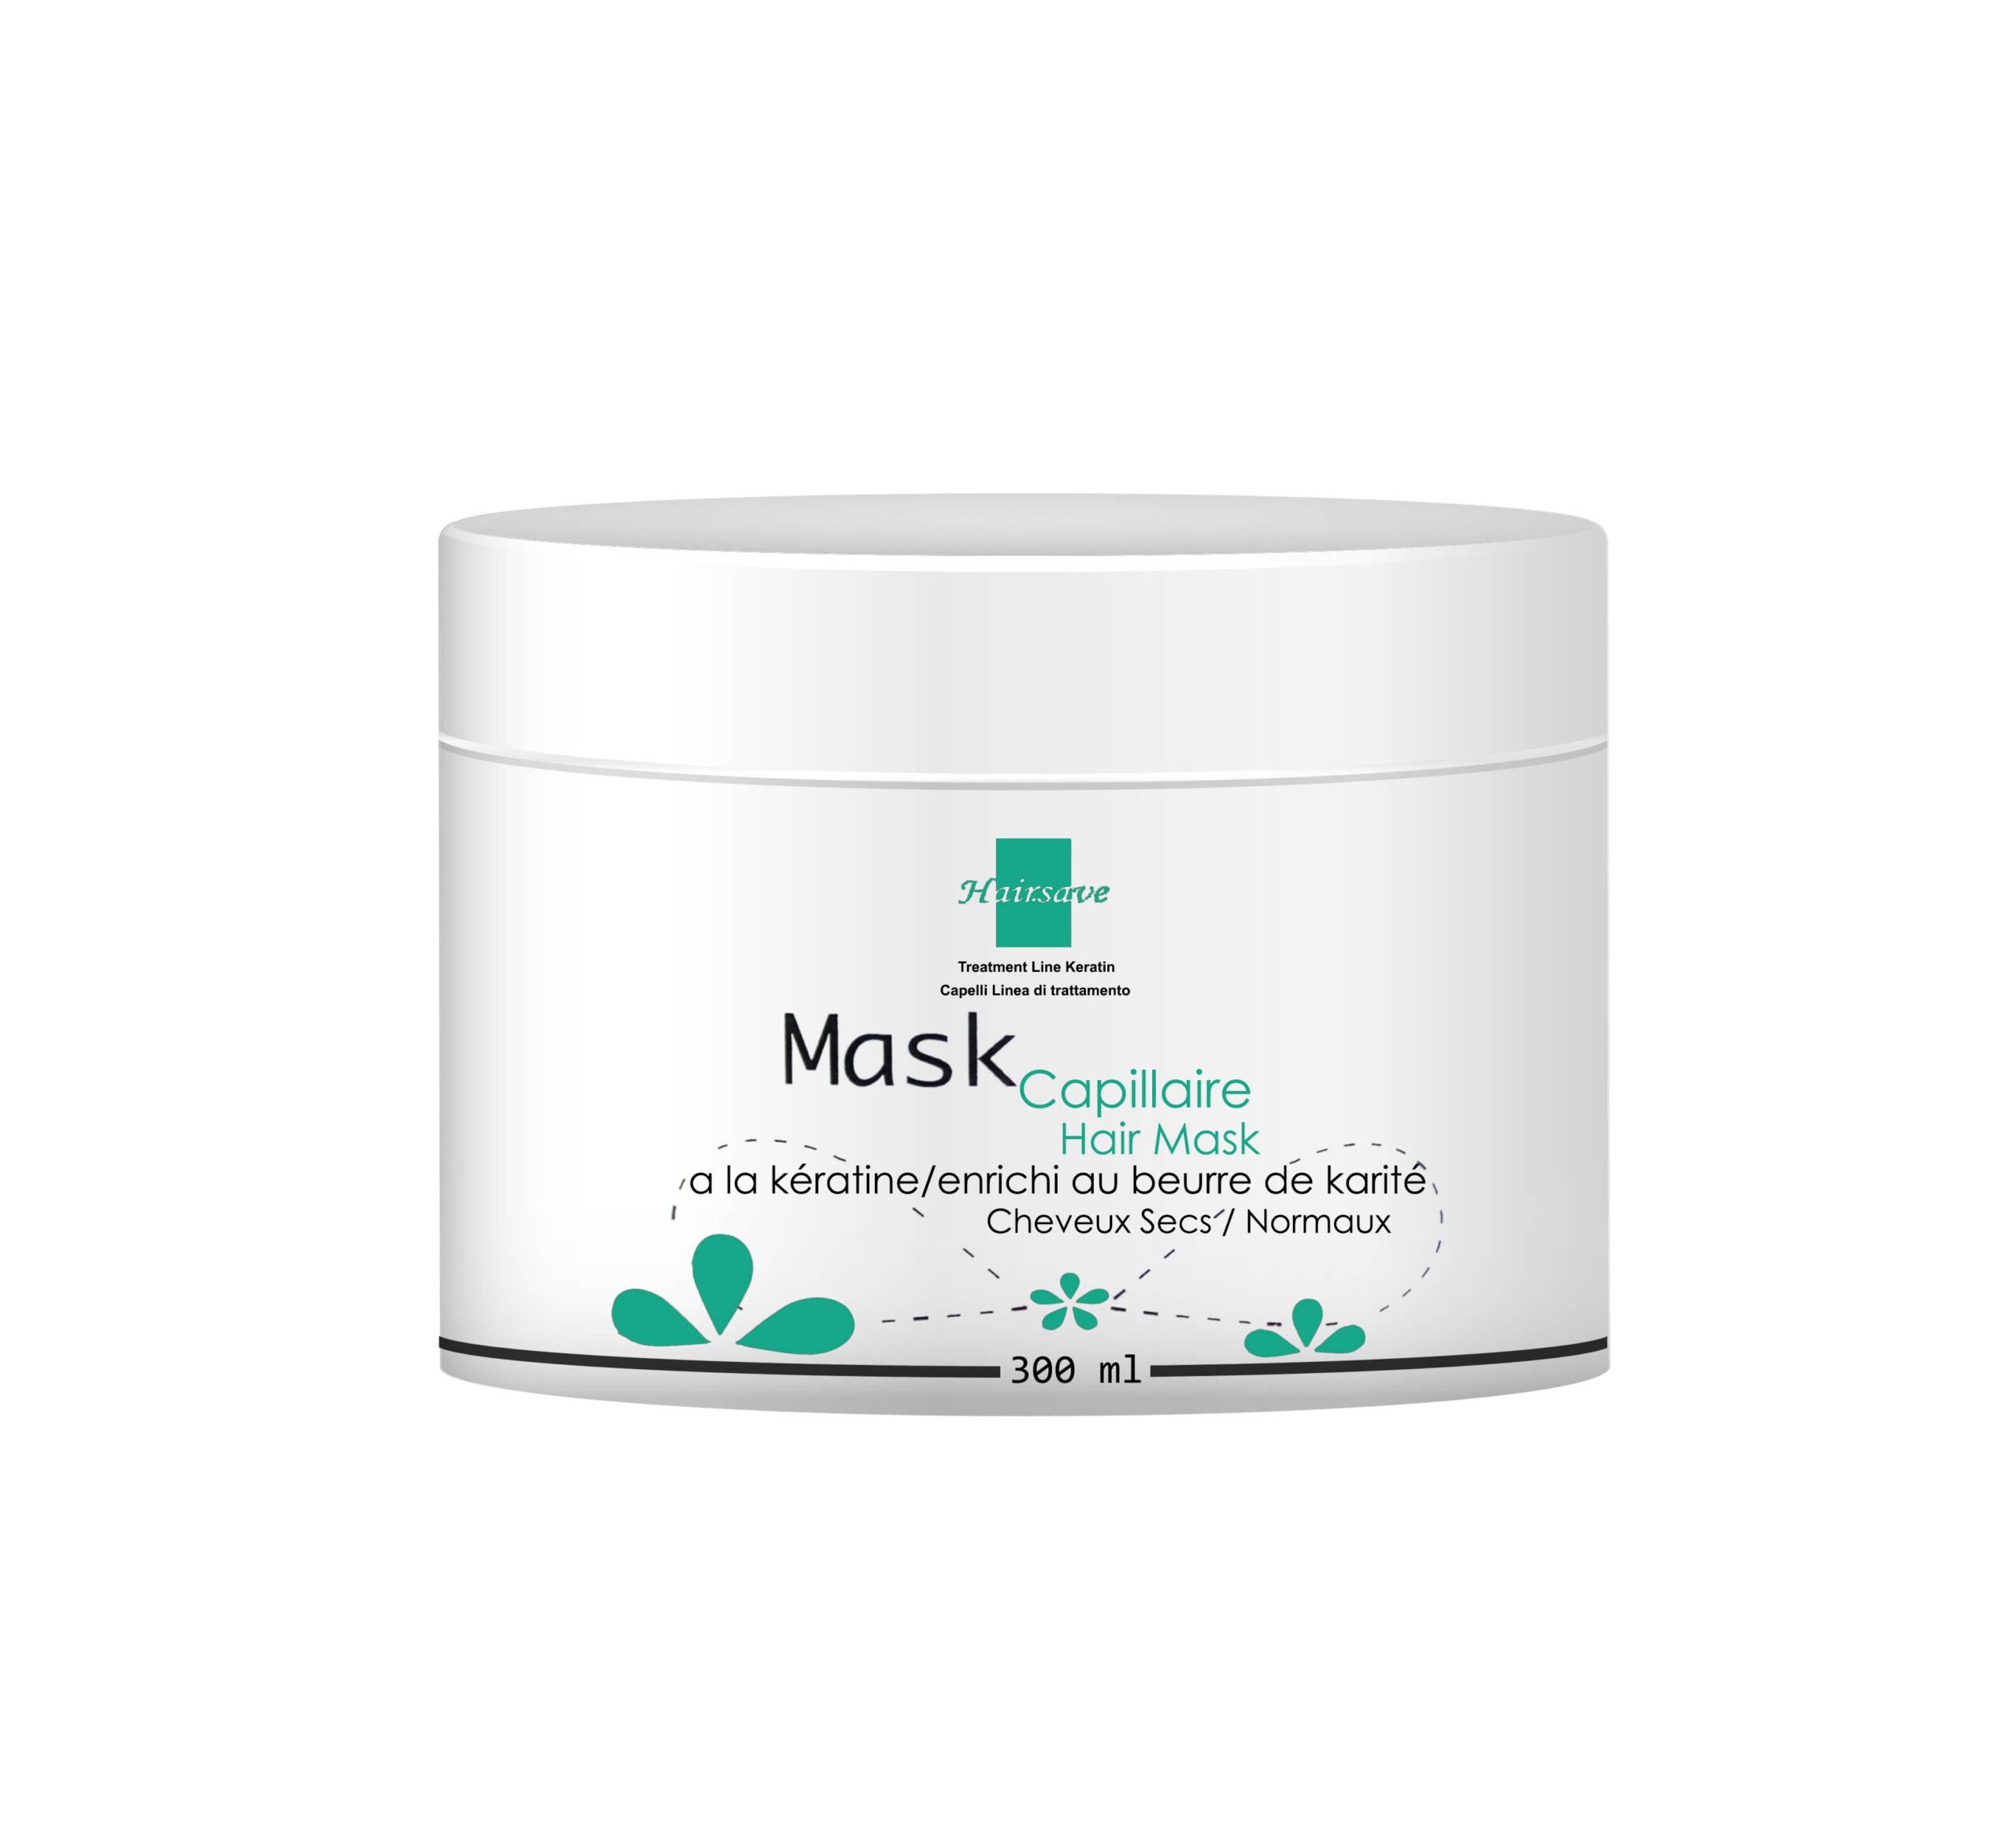 Hairsave masque capillaire à la kératine enrichi au beurre de karité pour cheveux secs et normaux – 300ml